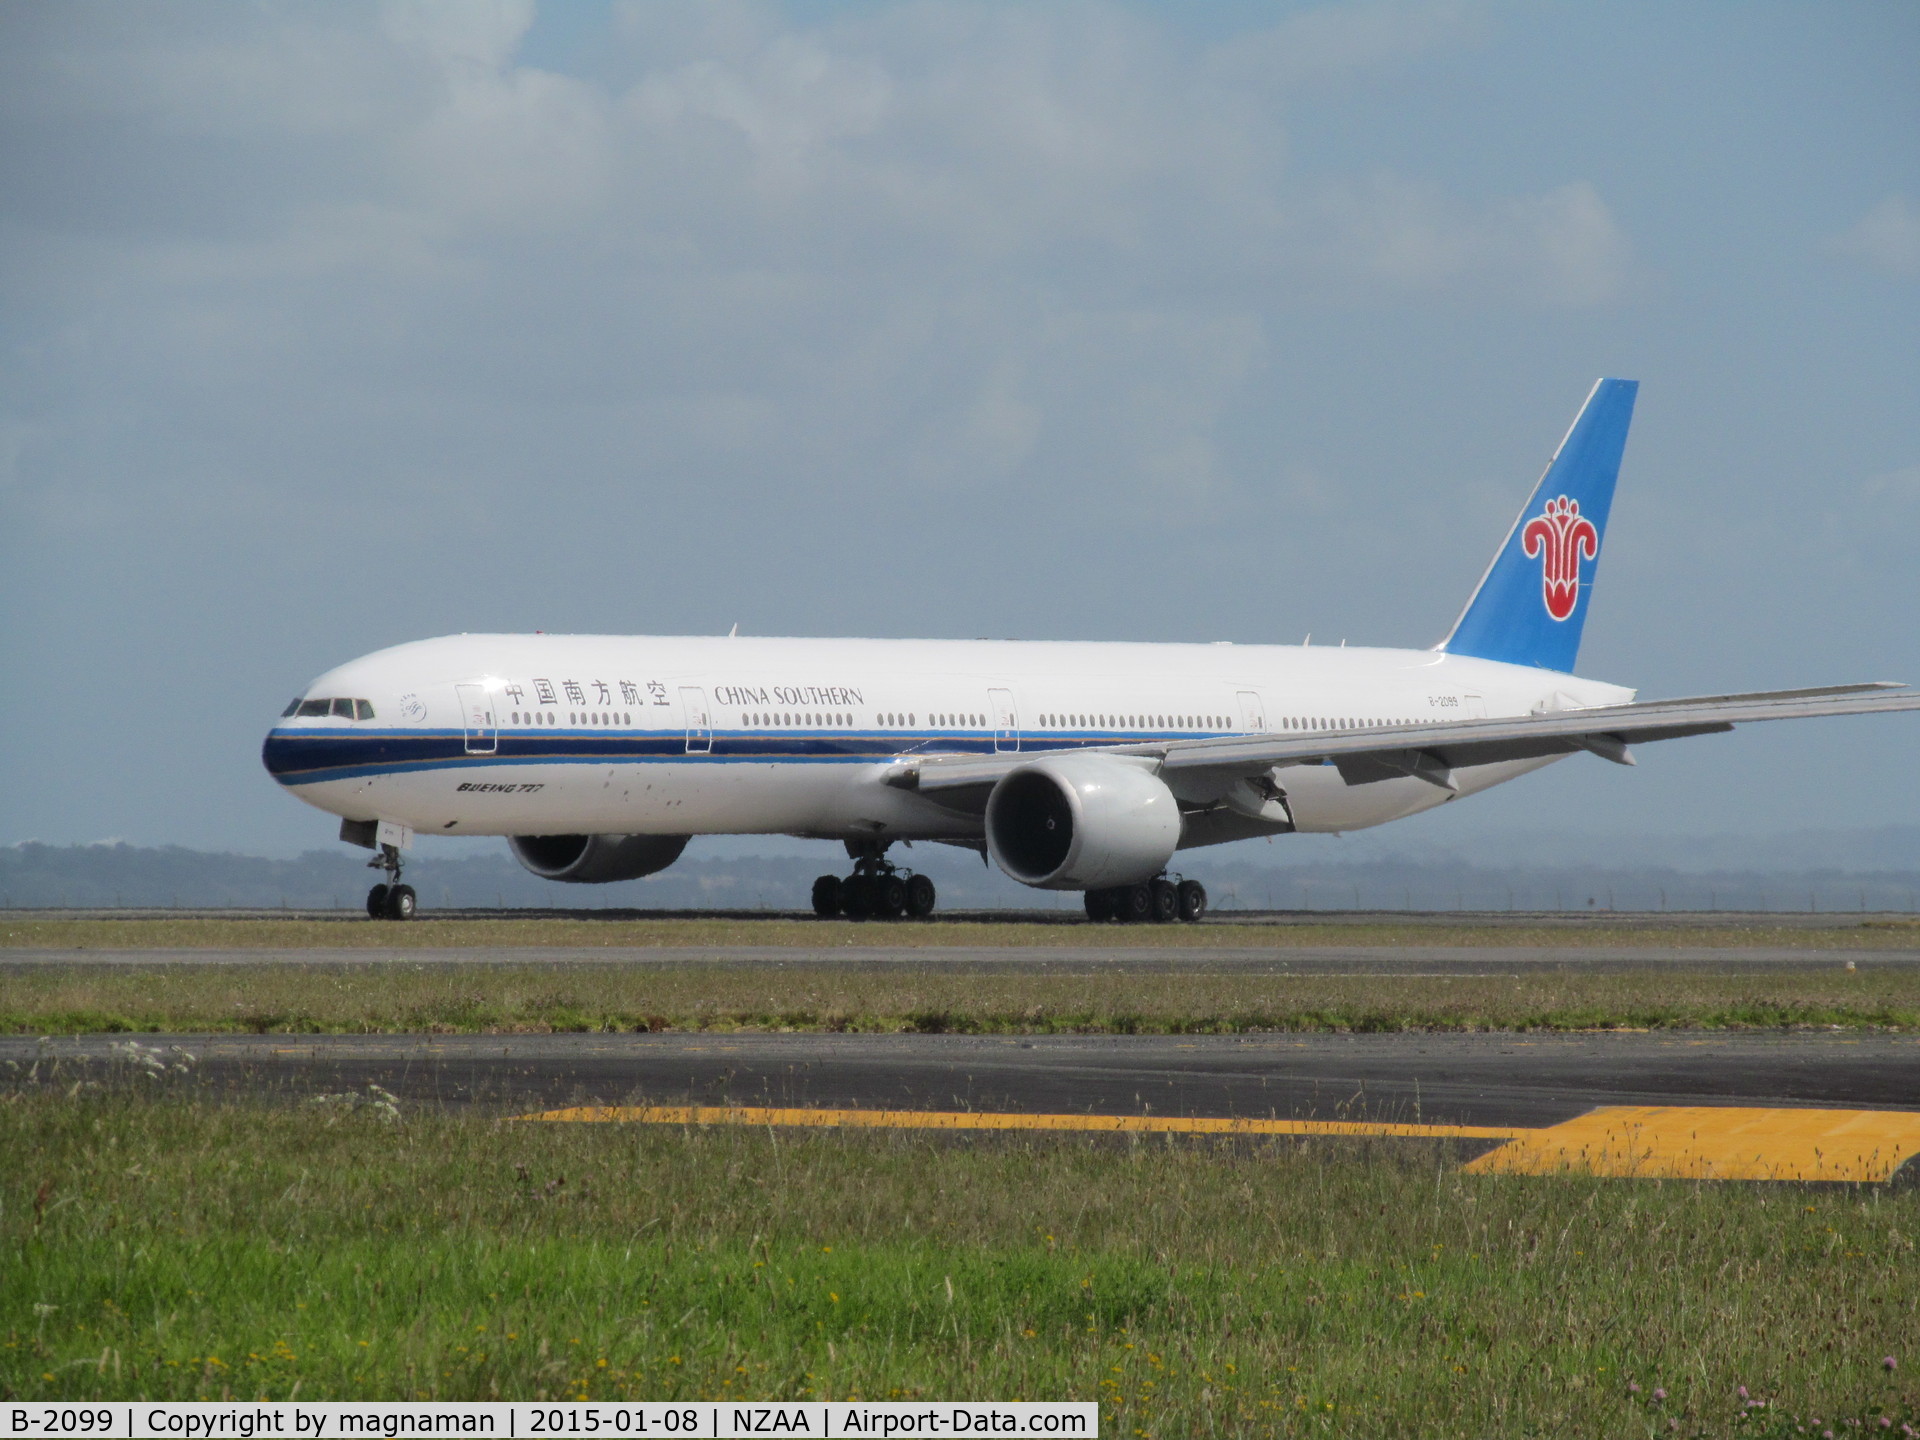 B-2099, 2014 Boeing 777-31B/ER C/N 43219, just landed